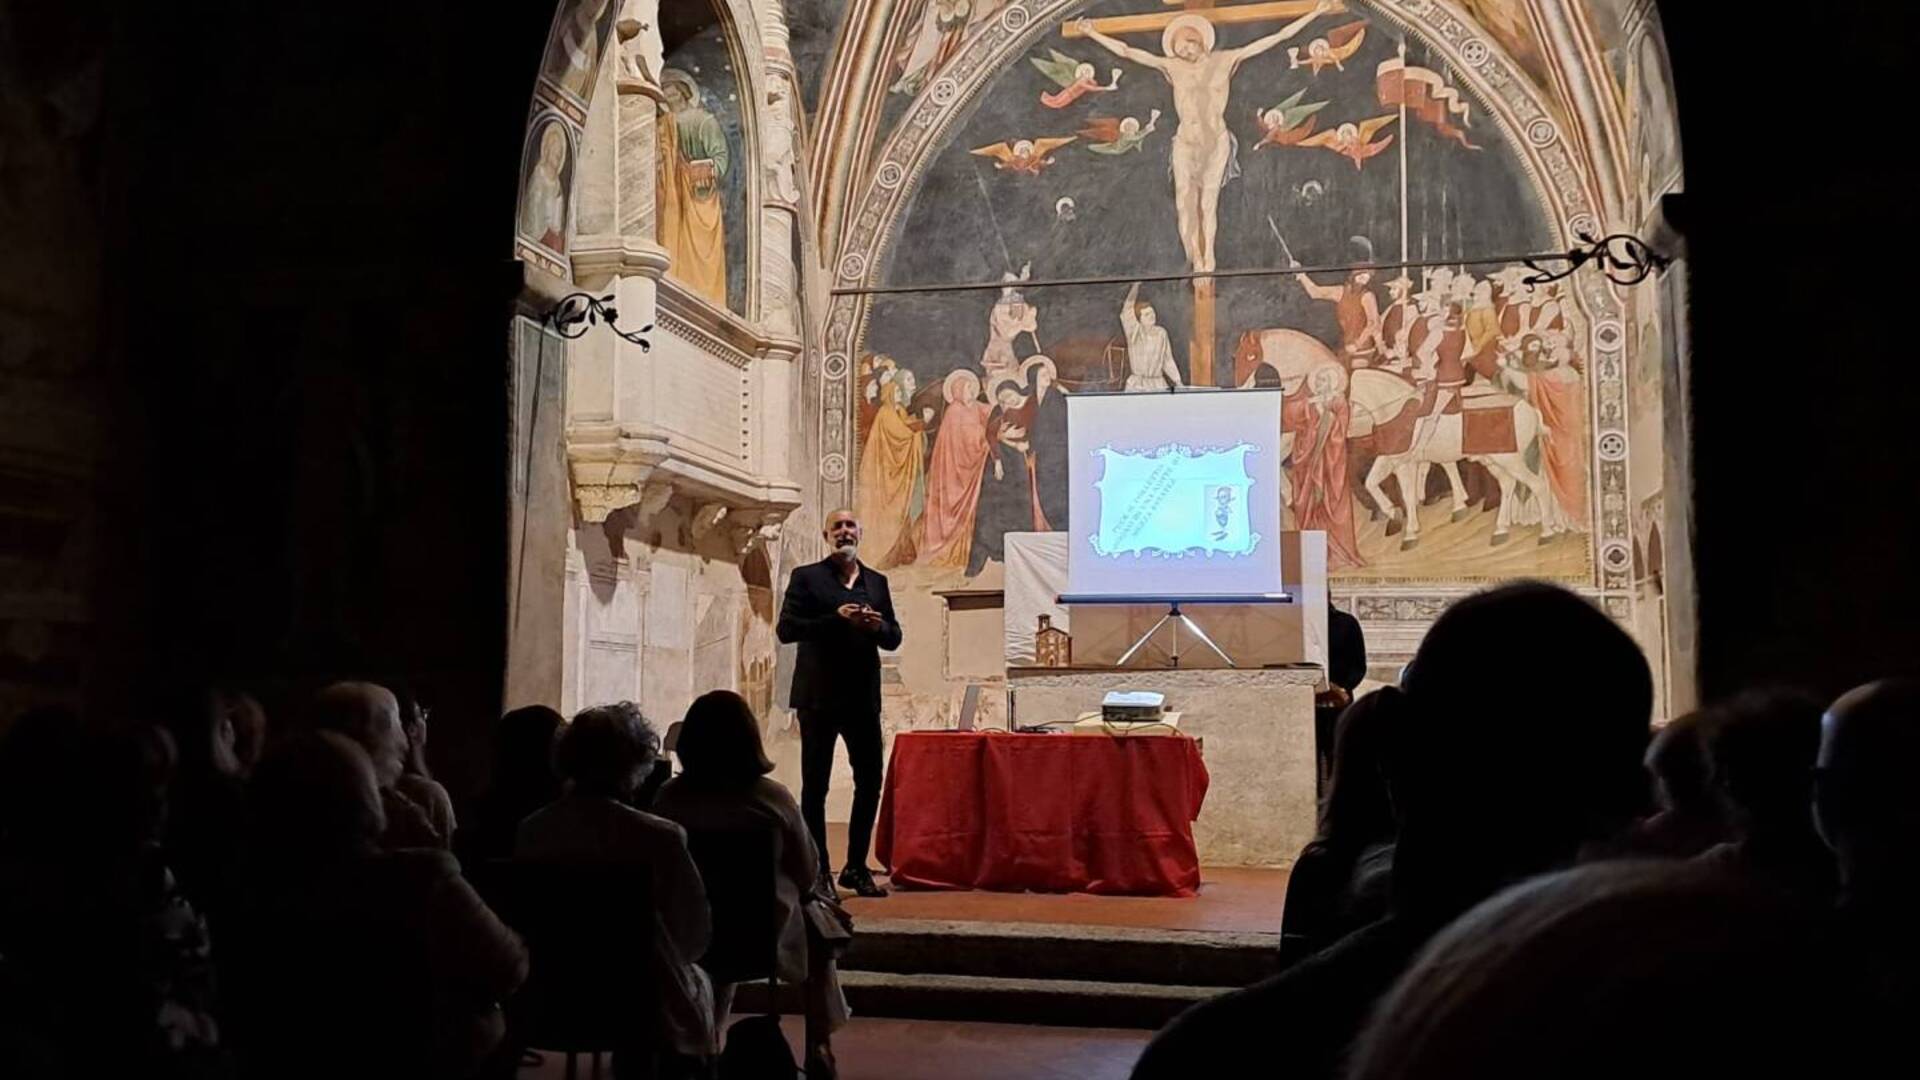 Lentate sul Seveso, l’Oratorio trecentesco di Santo Stefano ospita una nuova serata dantesca: tutto ciò che non sappiamo su Ulisse